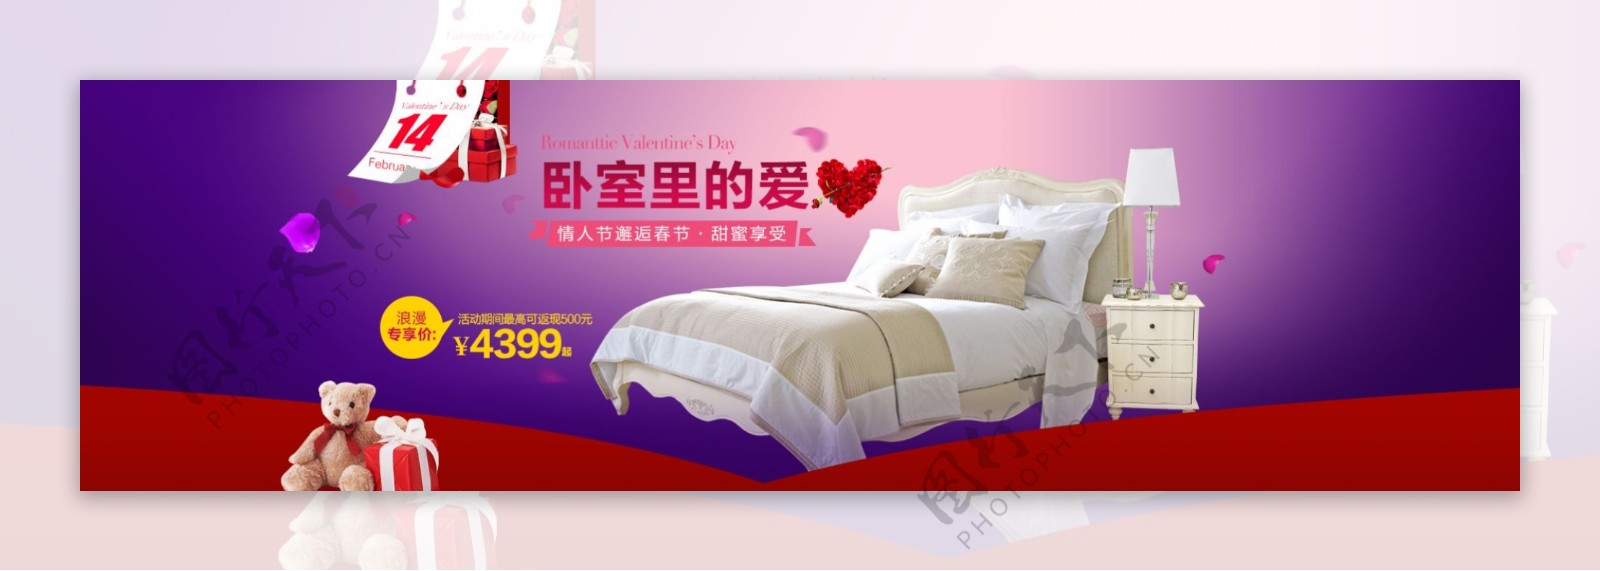 浪漫情人节紫色背景欧式美式家具首页海报